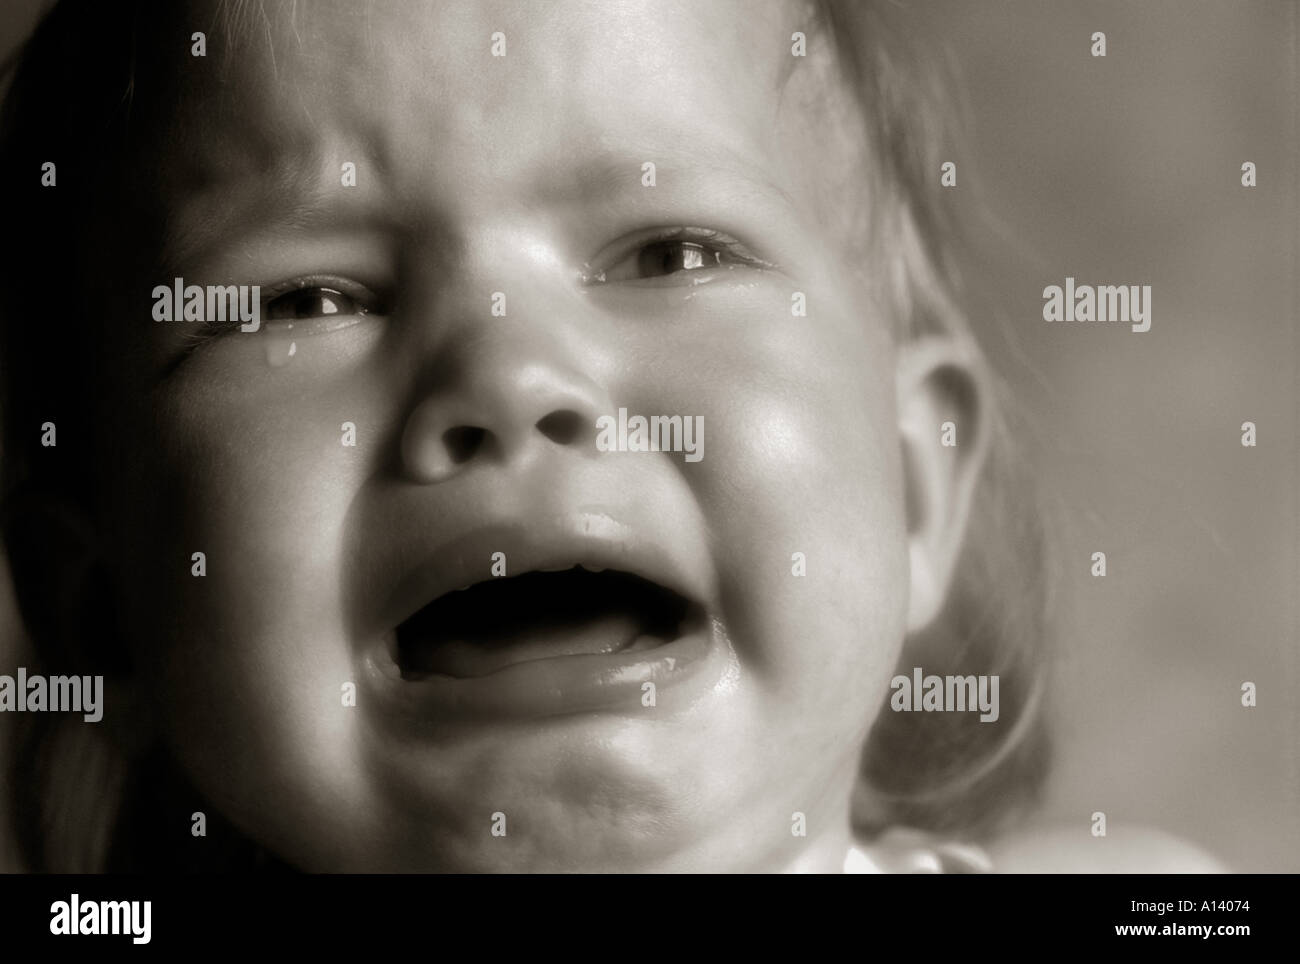 close up studio portrait of a baby crying gros plan d'un enfant en pleurs Stock Photo